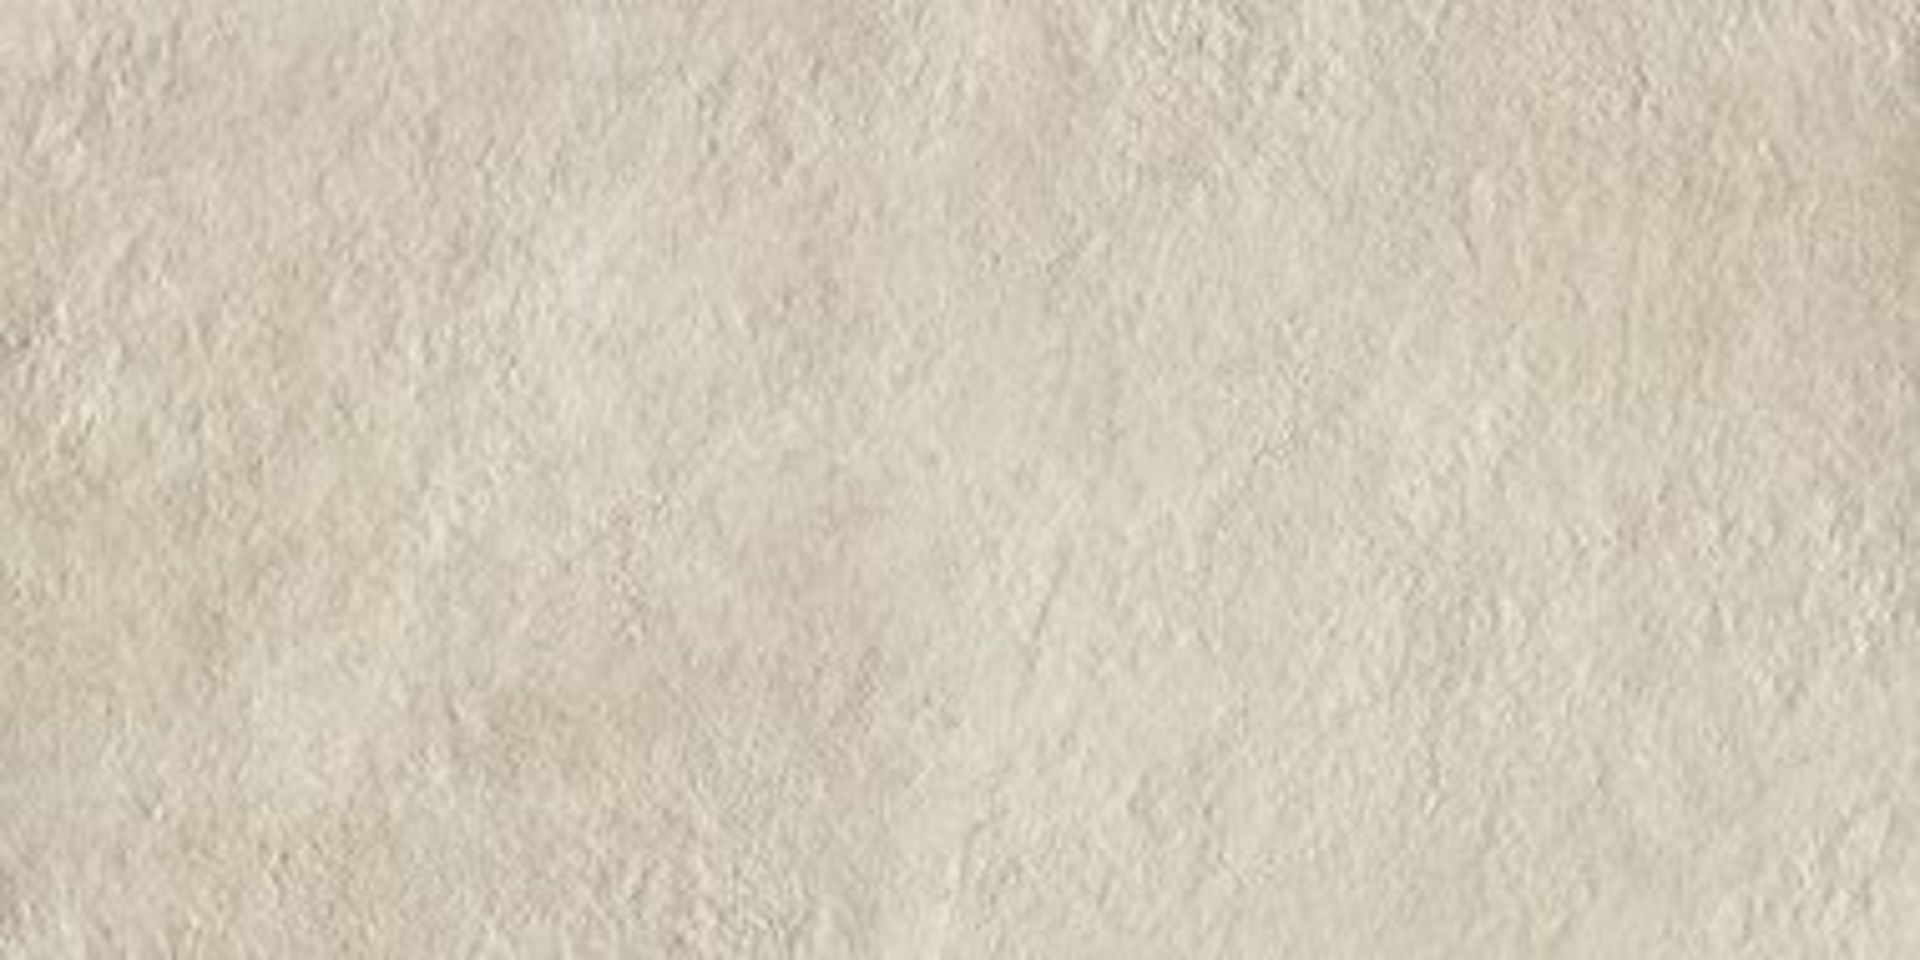 8 x Boxes of RAK Porcelain Tiles - Design Concrete Range - Sand Colour Matt Finish - Size: 120x60cm - Image 3 of 11